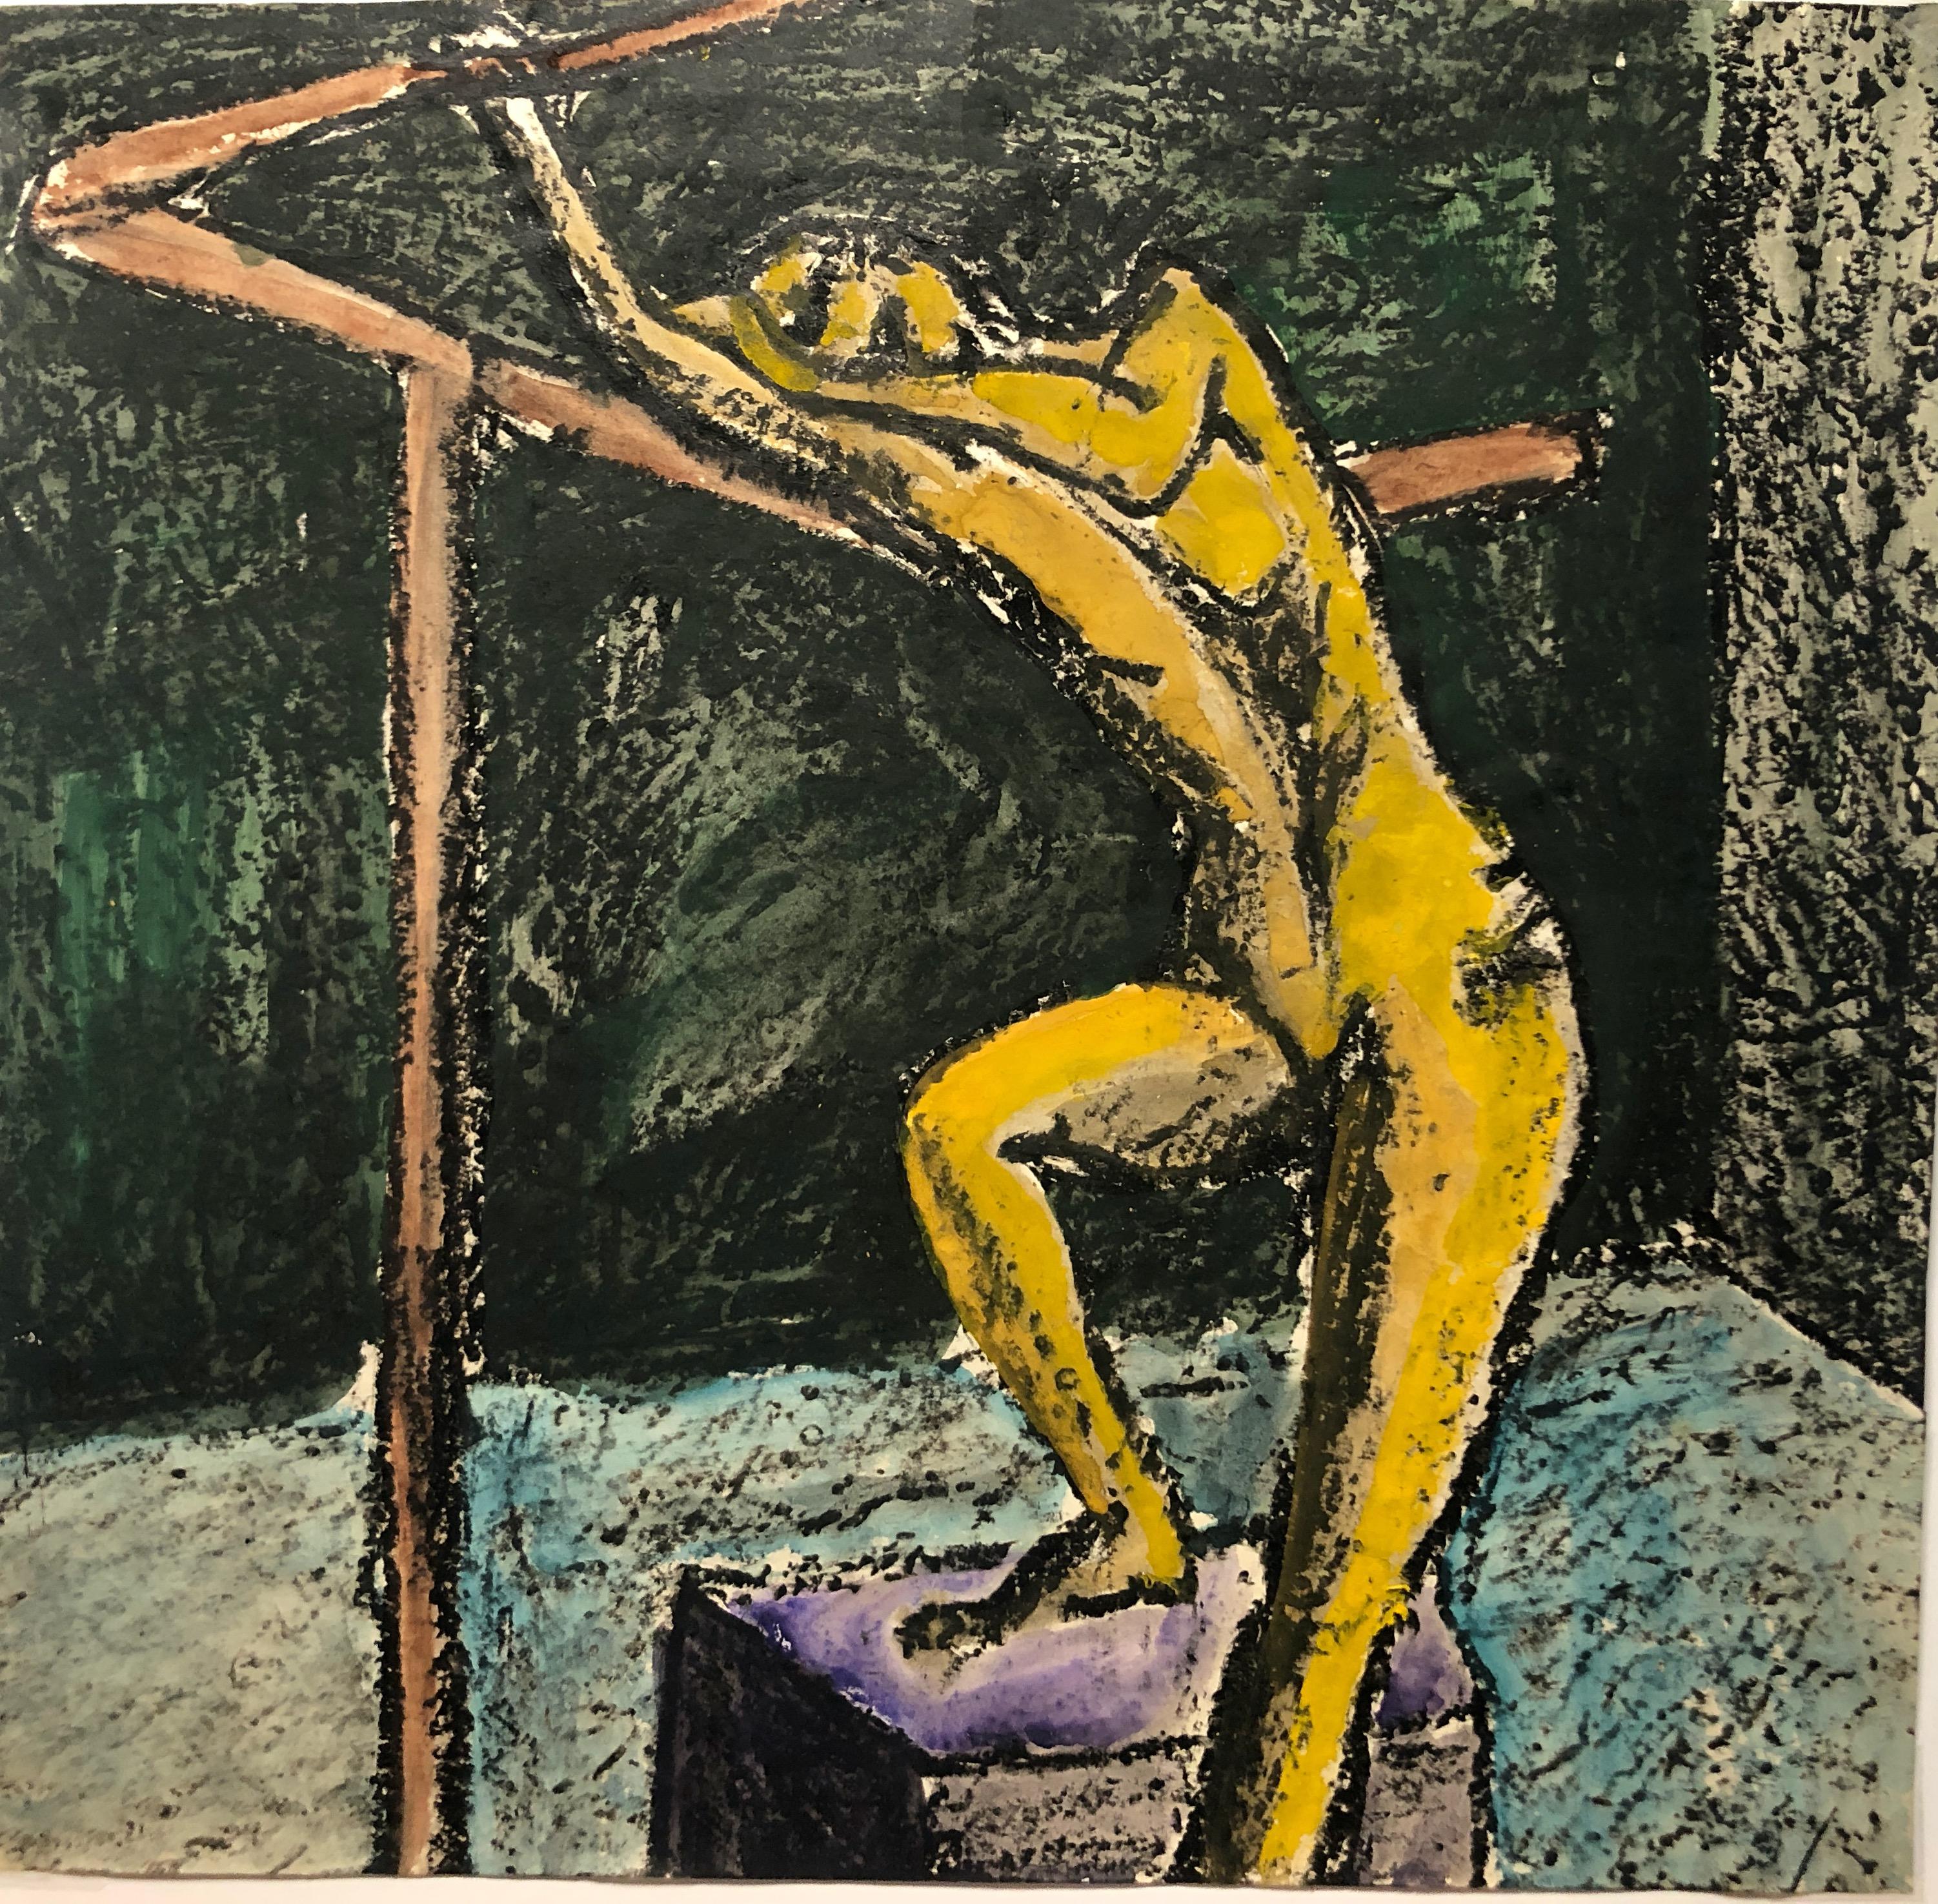 Mid-Century-Gemälde "Hanging on a Bar" in Gouache und Pastell, weiblicher Akt, 1960er Jahre